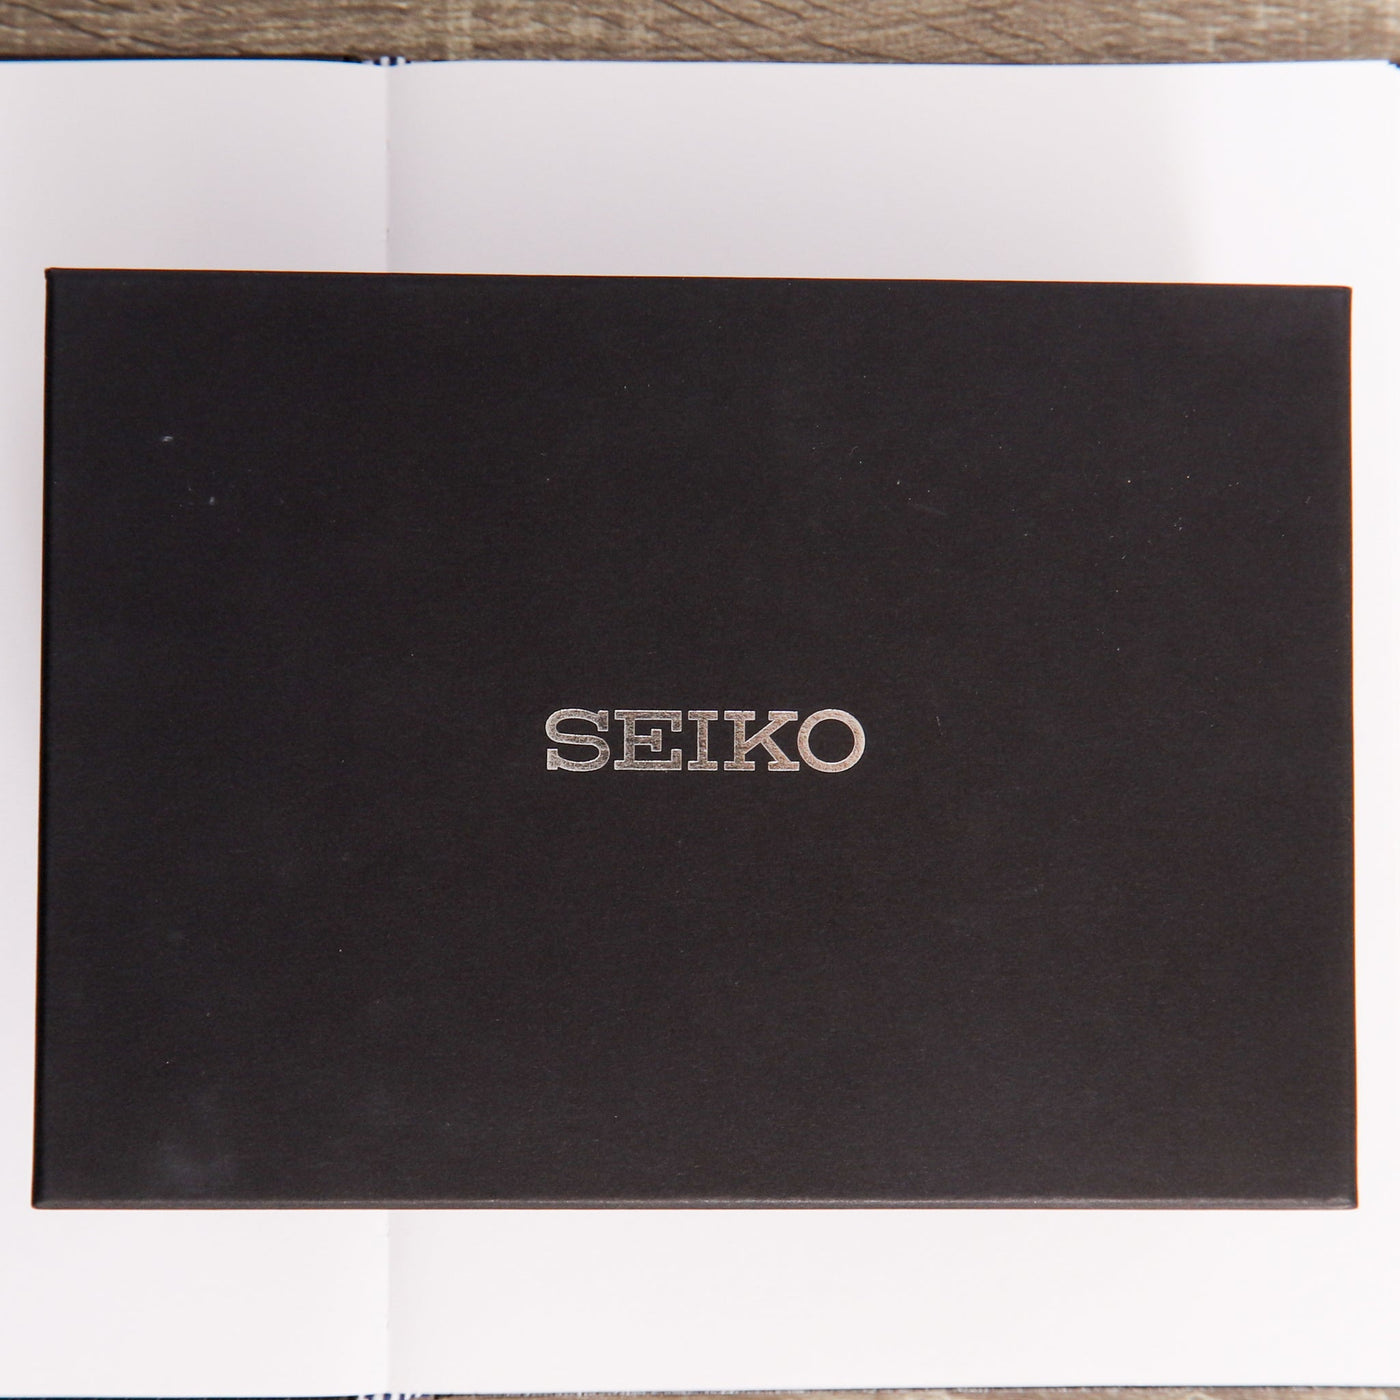 Seiko Prospex 1986 Quartz Diver's 35th Anniversary Limited Edition Watch Box